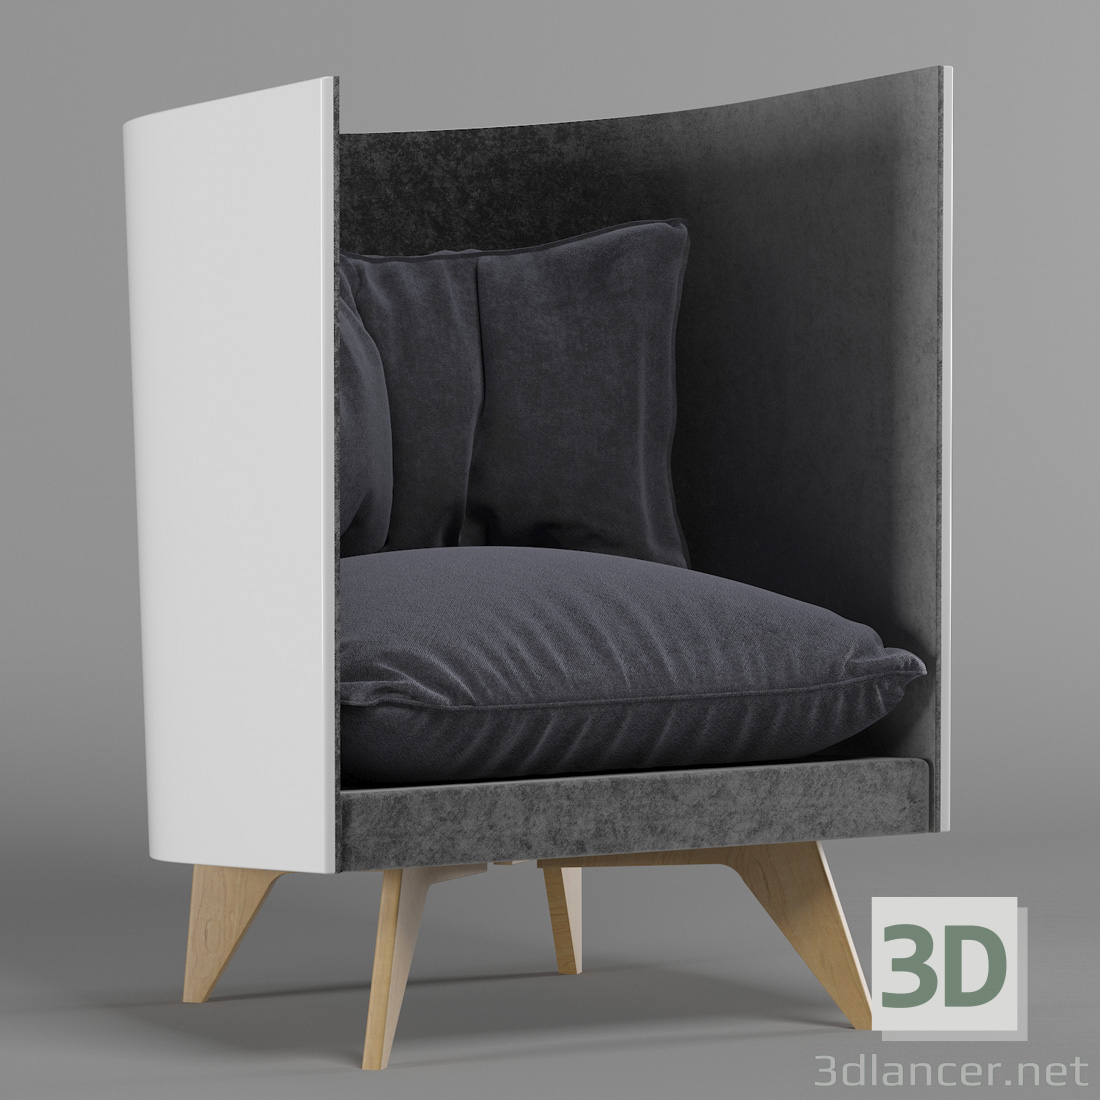 Sillón ODESD2-V1 3D modelo Compro - render